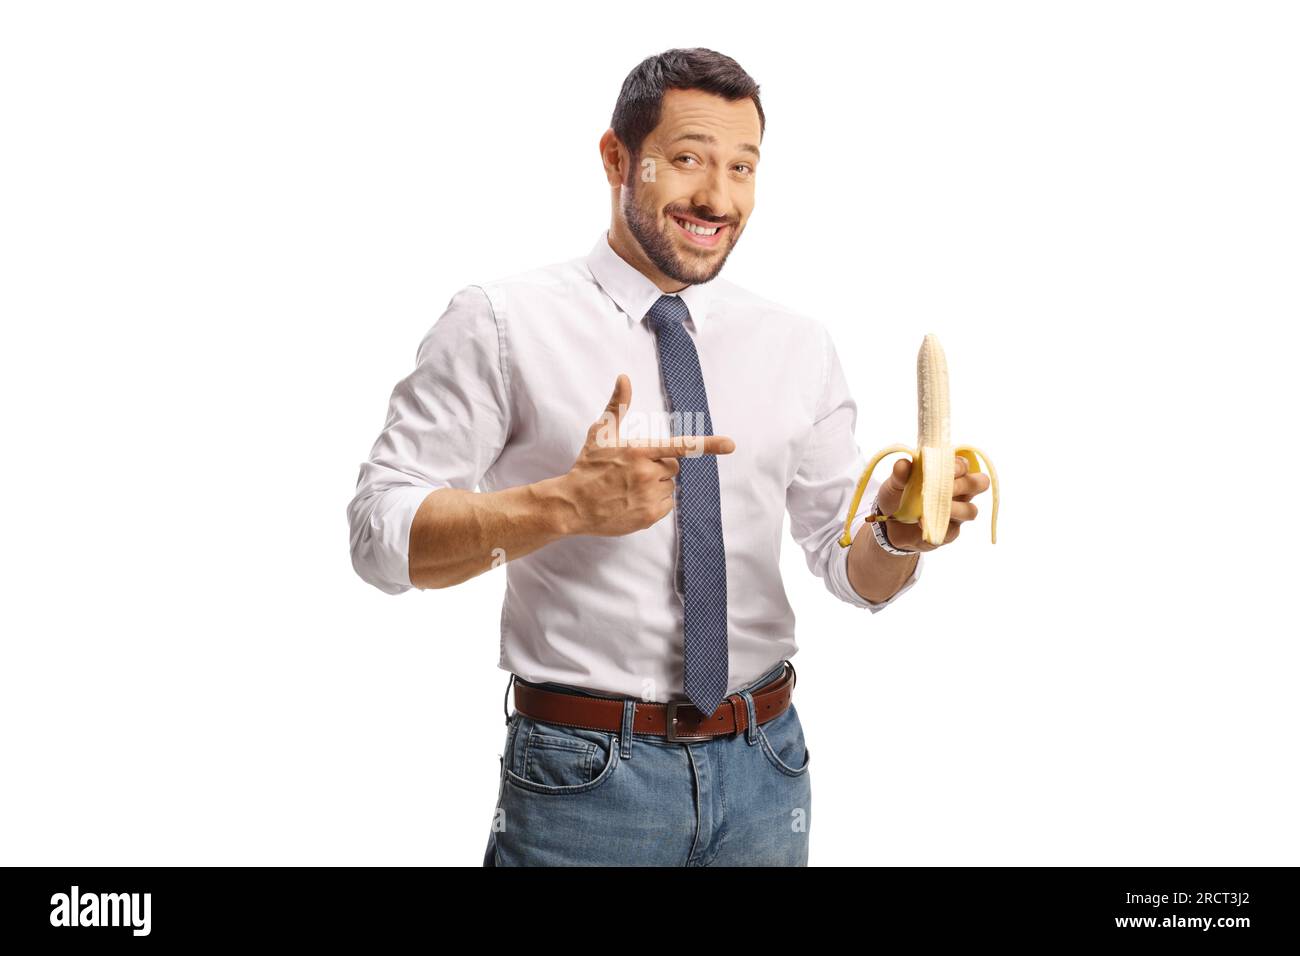 Glücklicher junger Mann, der eine Banane hält und isoliert auf weißen Hintergrund zeigt Stockfoto